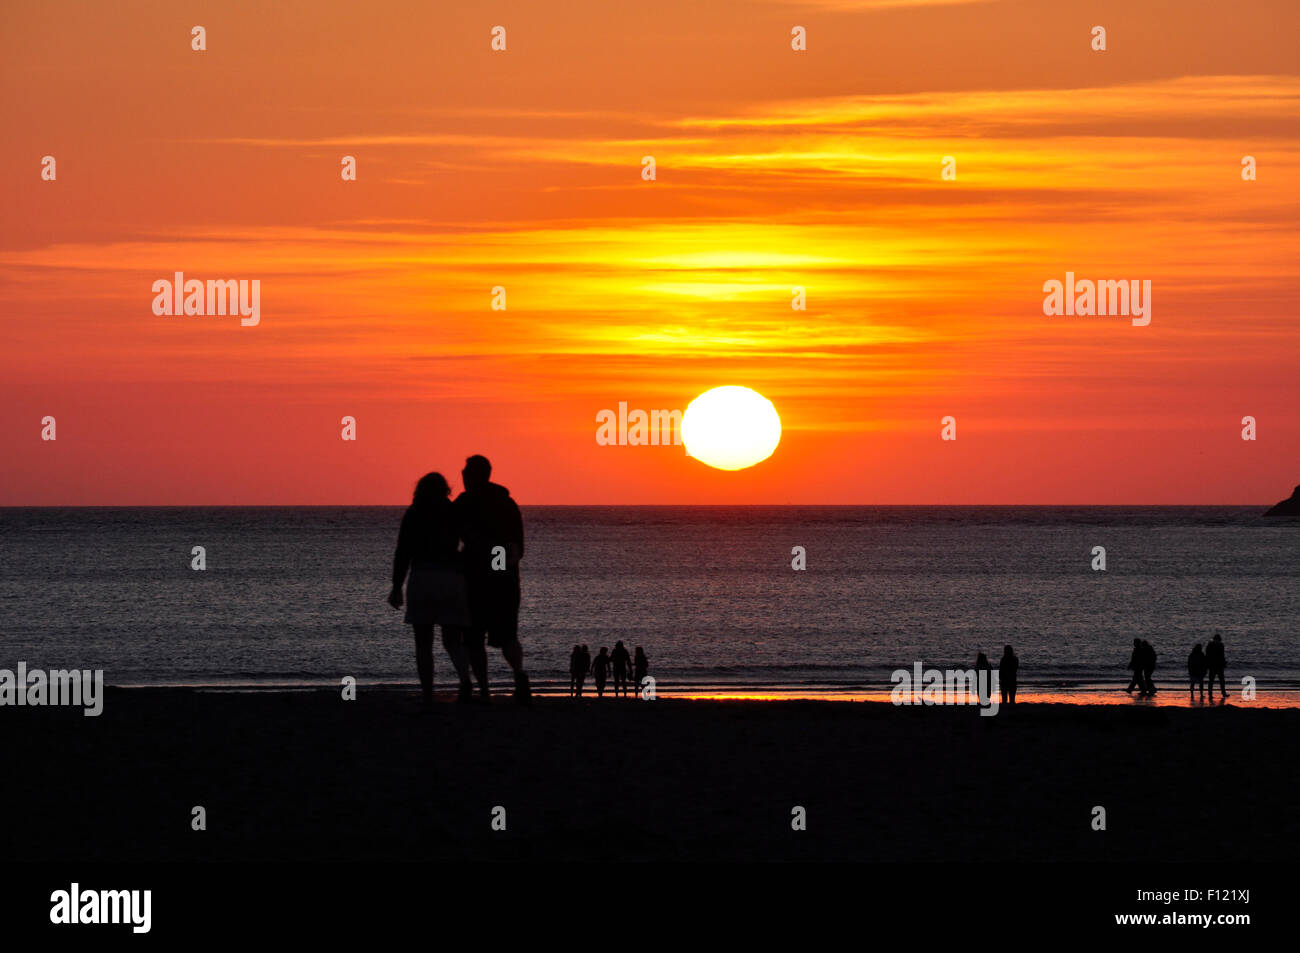 Cornouailles du nord - coucher de soleil sur la mer en chiffres - silhouette - un or/rouge et orange foncé striée - ciel mer réfléchissant Banque D'Images